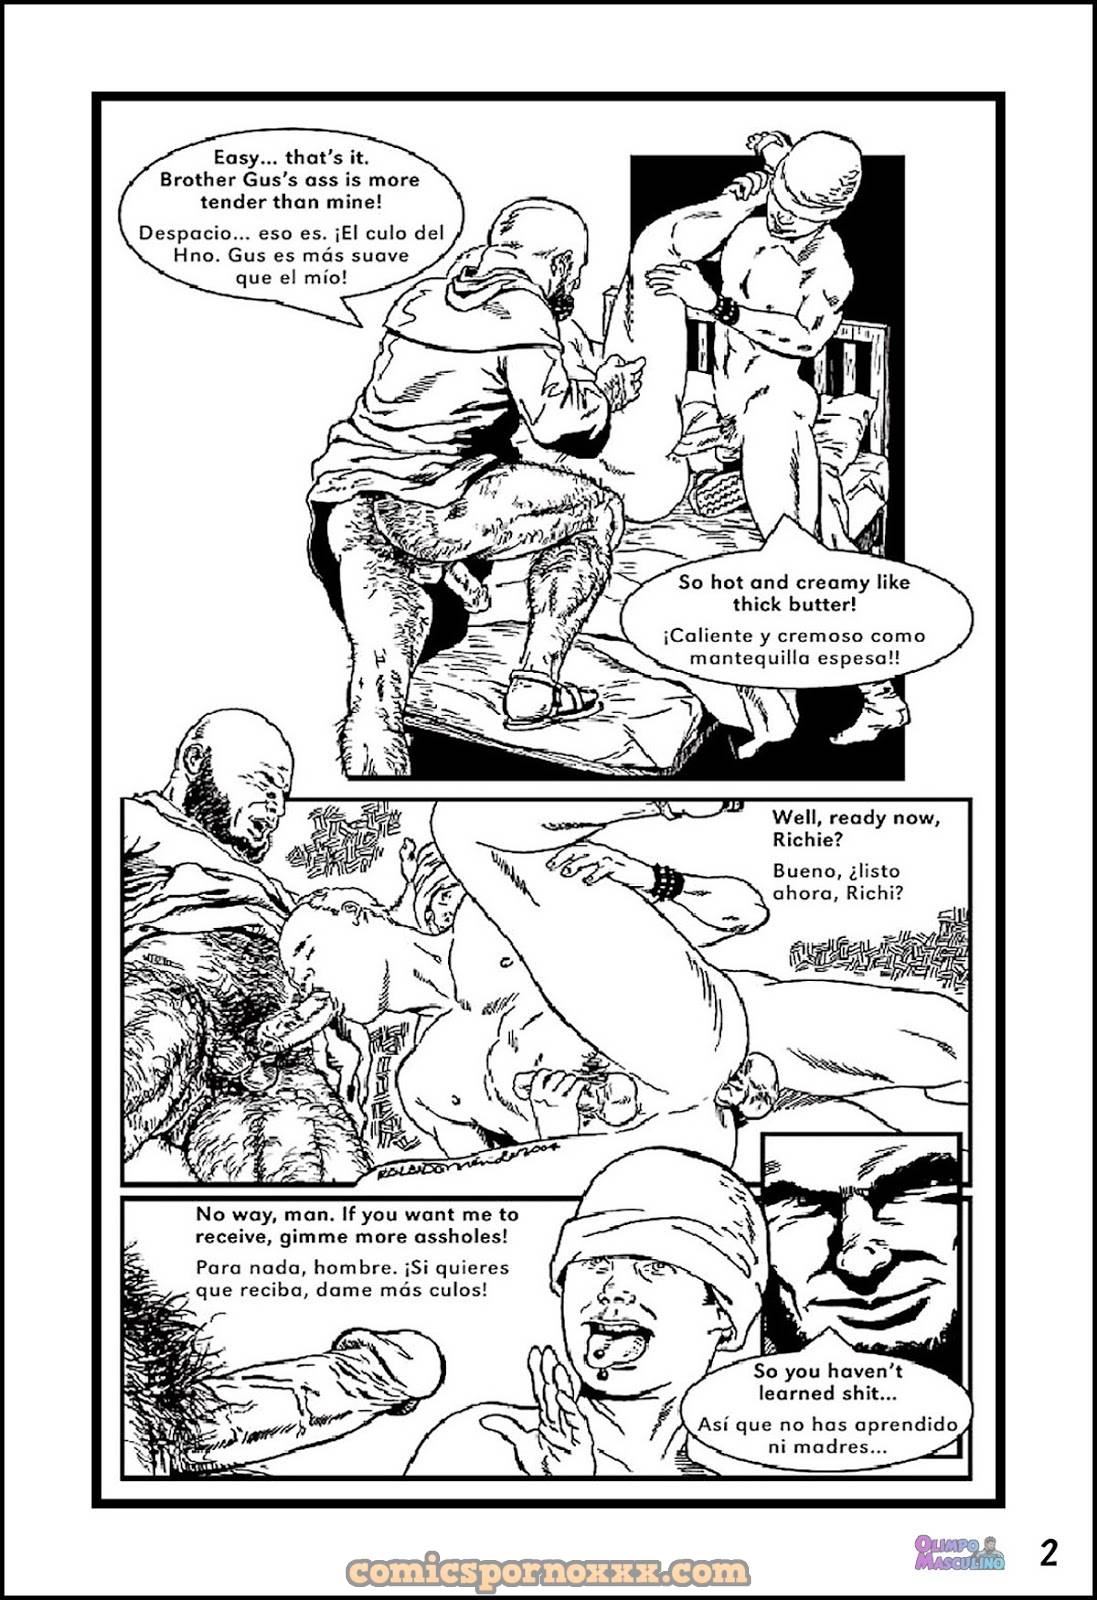 El Chico Rebelde #2 (Rolando Mérida) - 2 - Comics Porno - Hentai Manga - Cartoon XXX